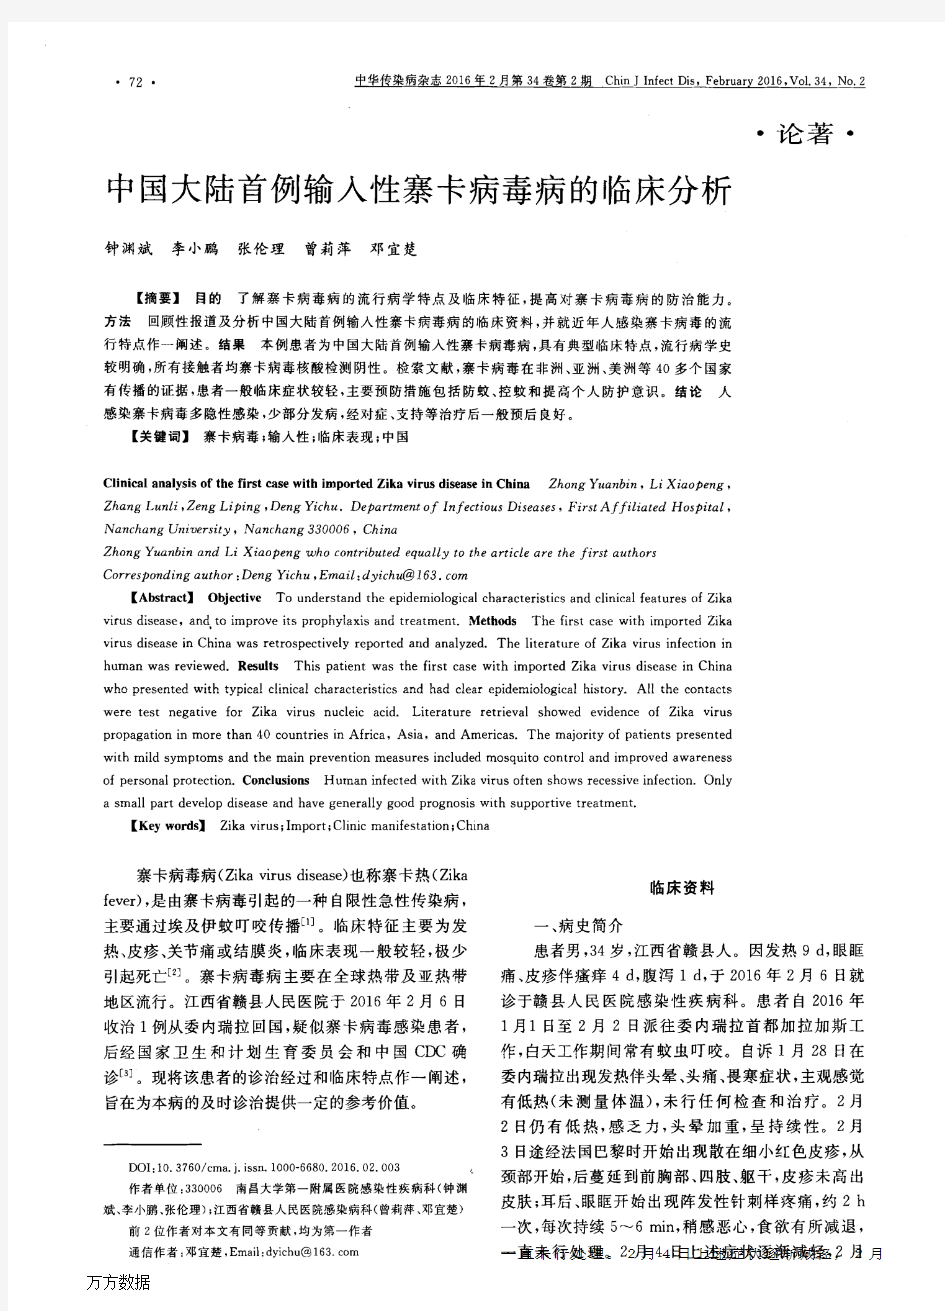 中国大陆首例输入性寨卡病毒病的临床分析重点